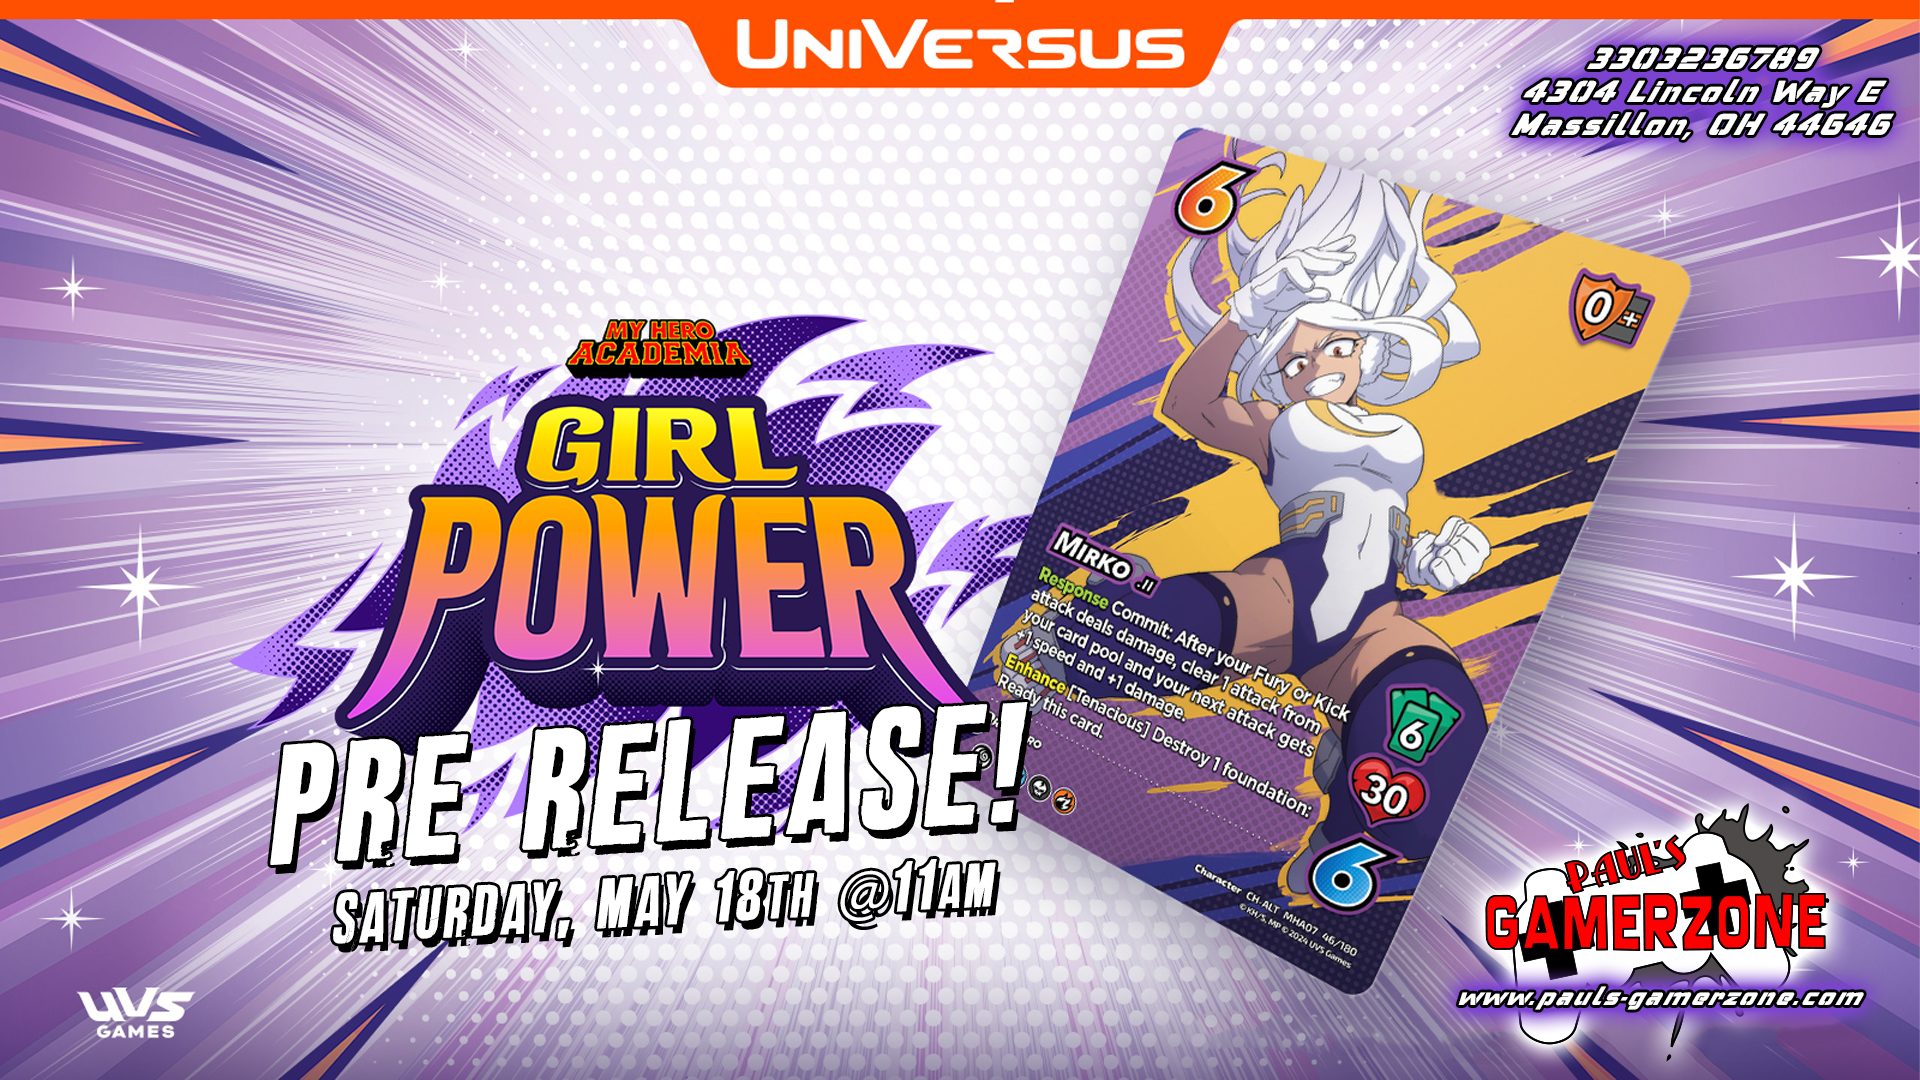 Universus Girl Power Prerelease!